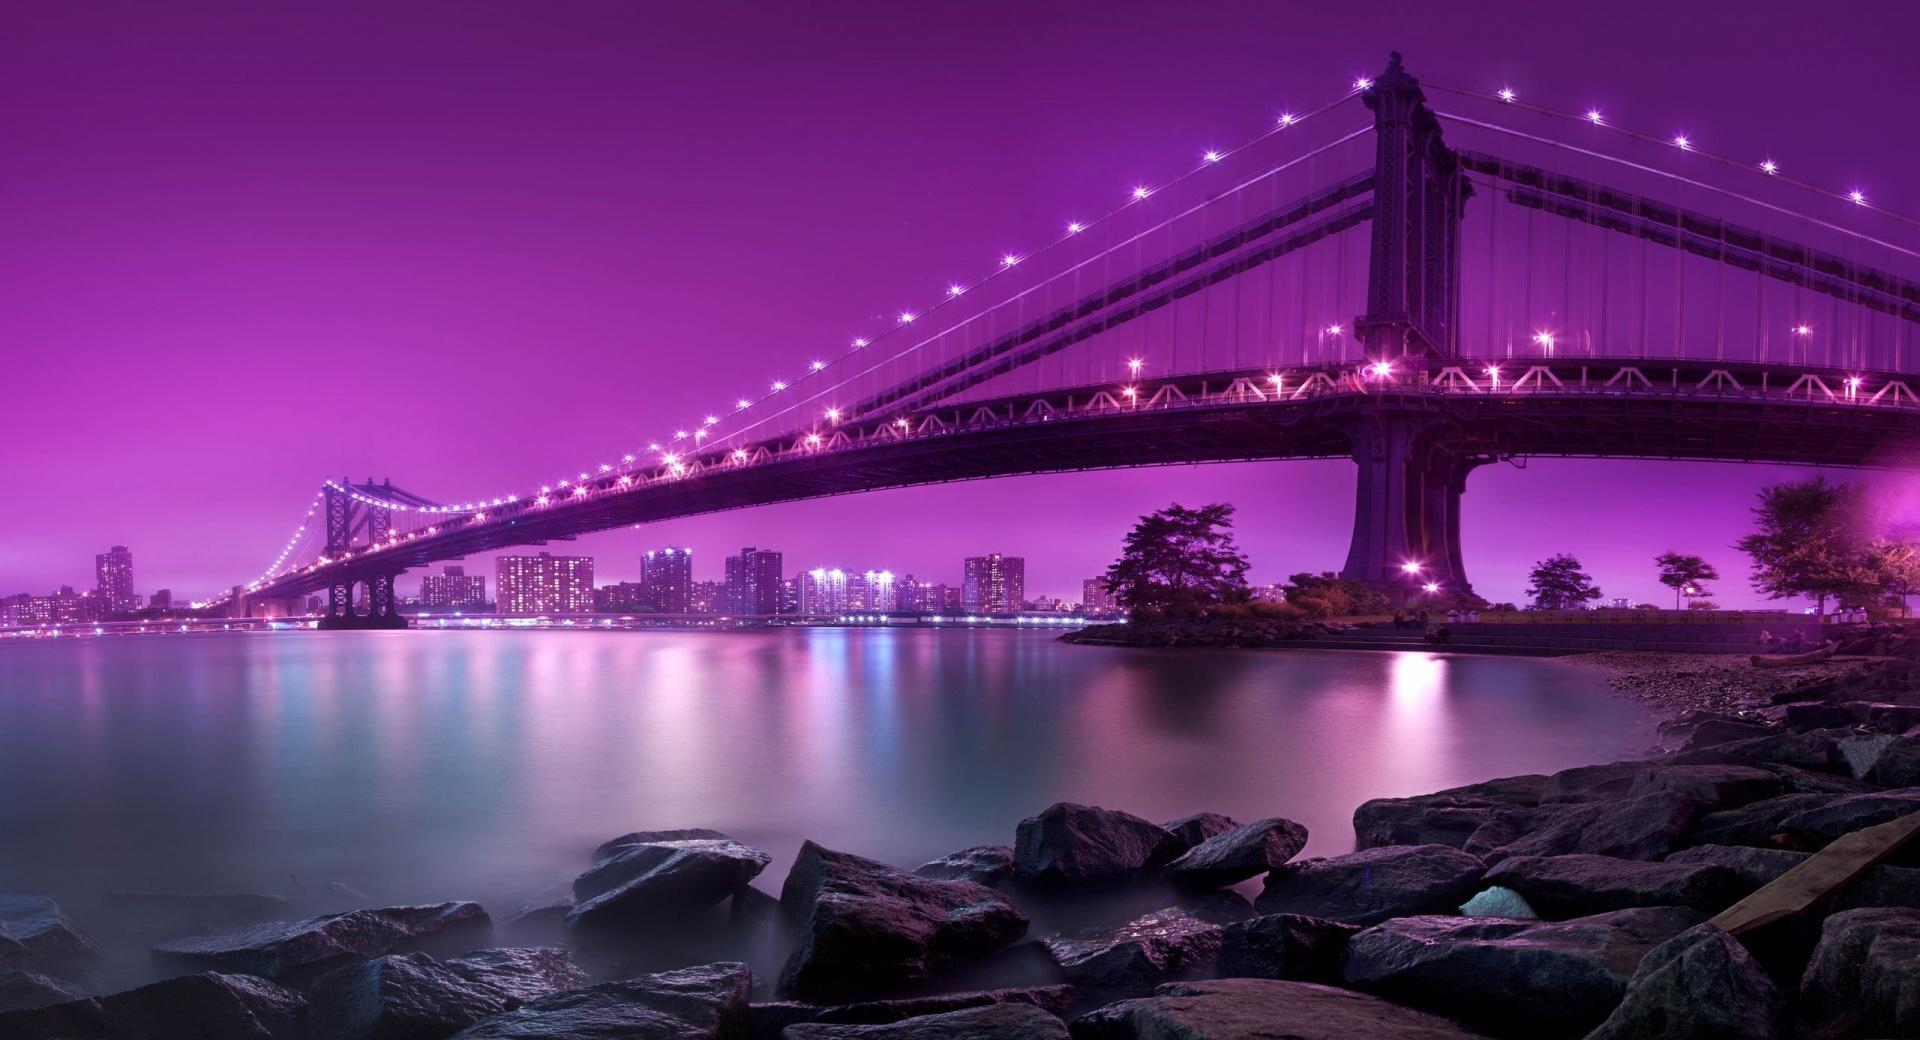 Bridge, Purple Light at 2048 x 2048 iPad size wallpapers HD quality